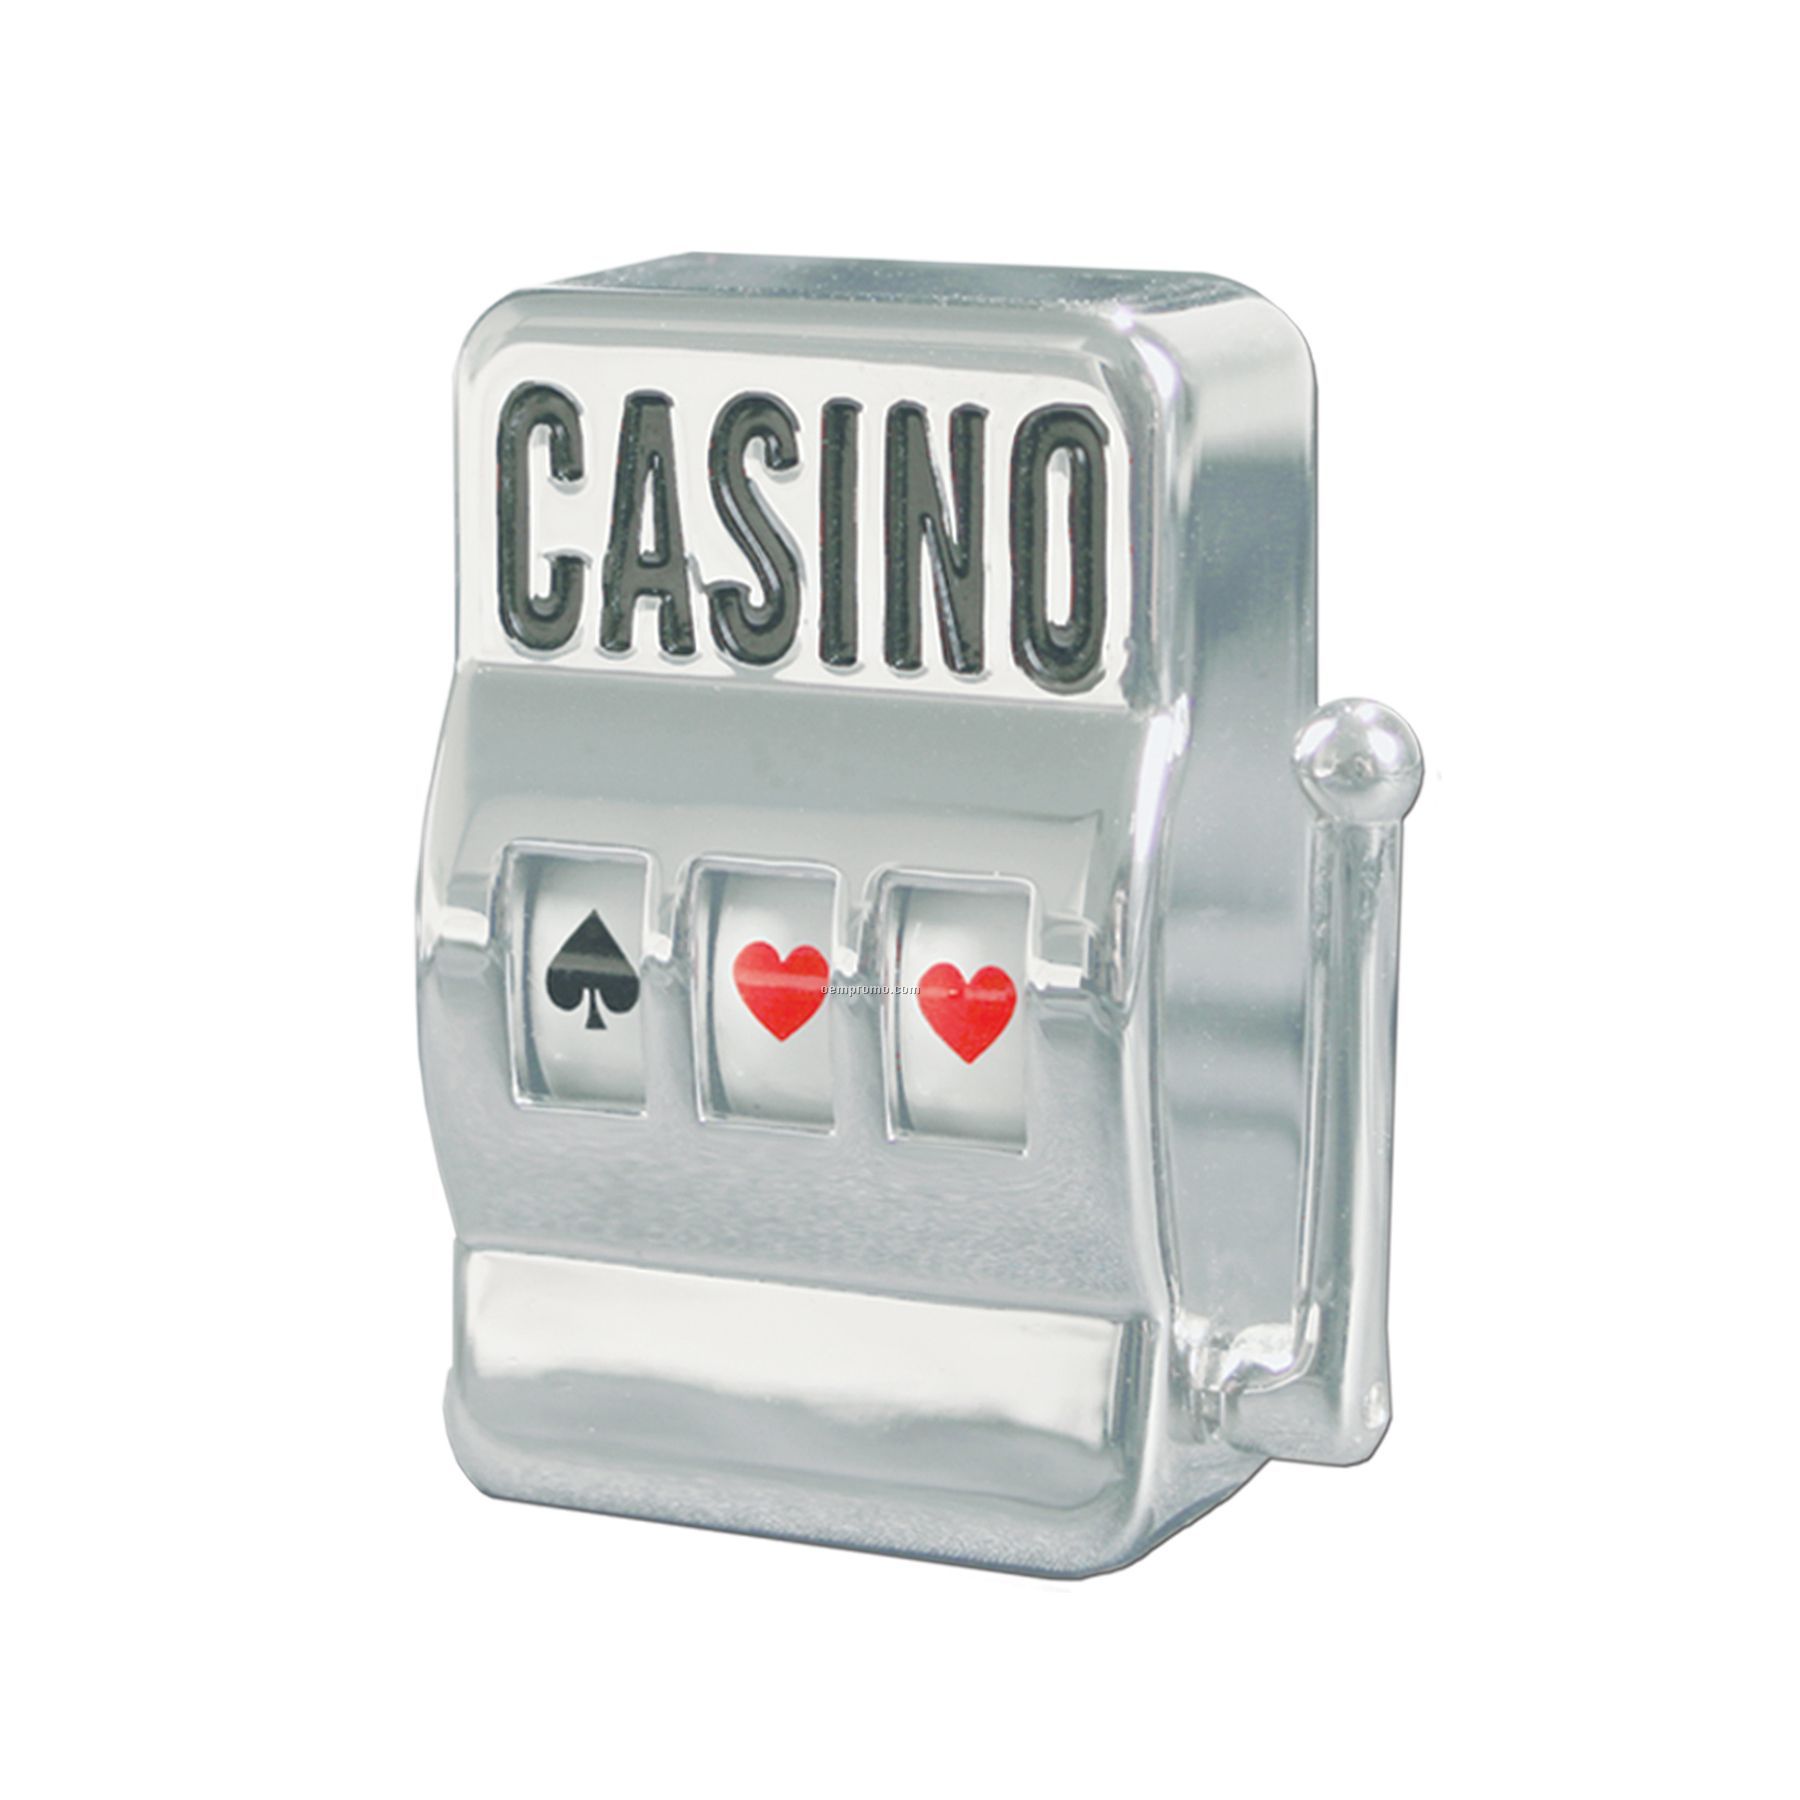 Casino Slot Machine Paperweight